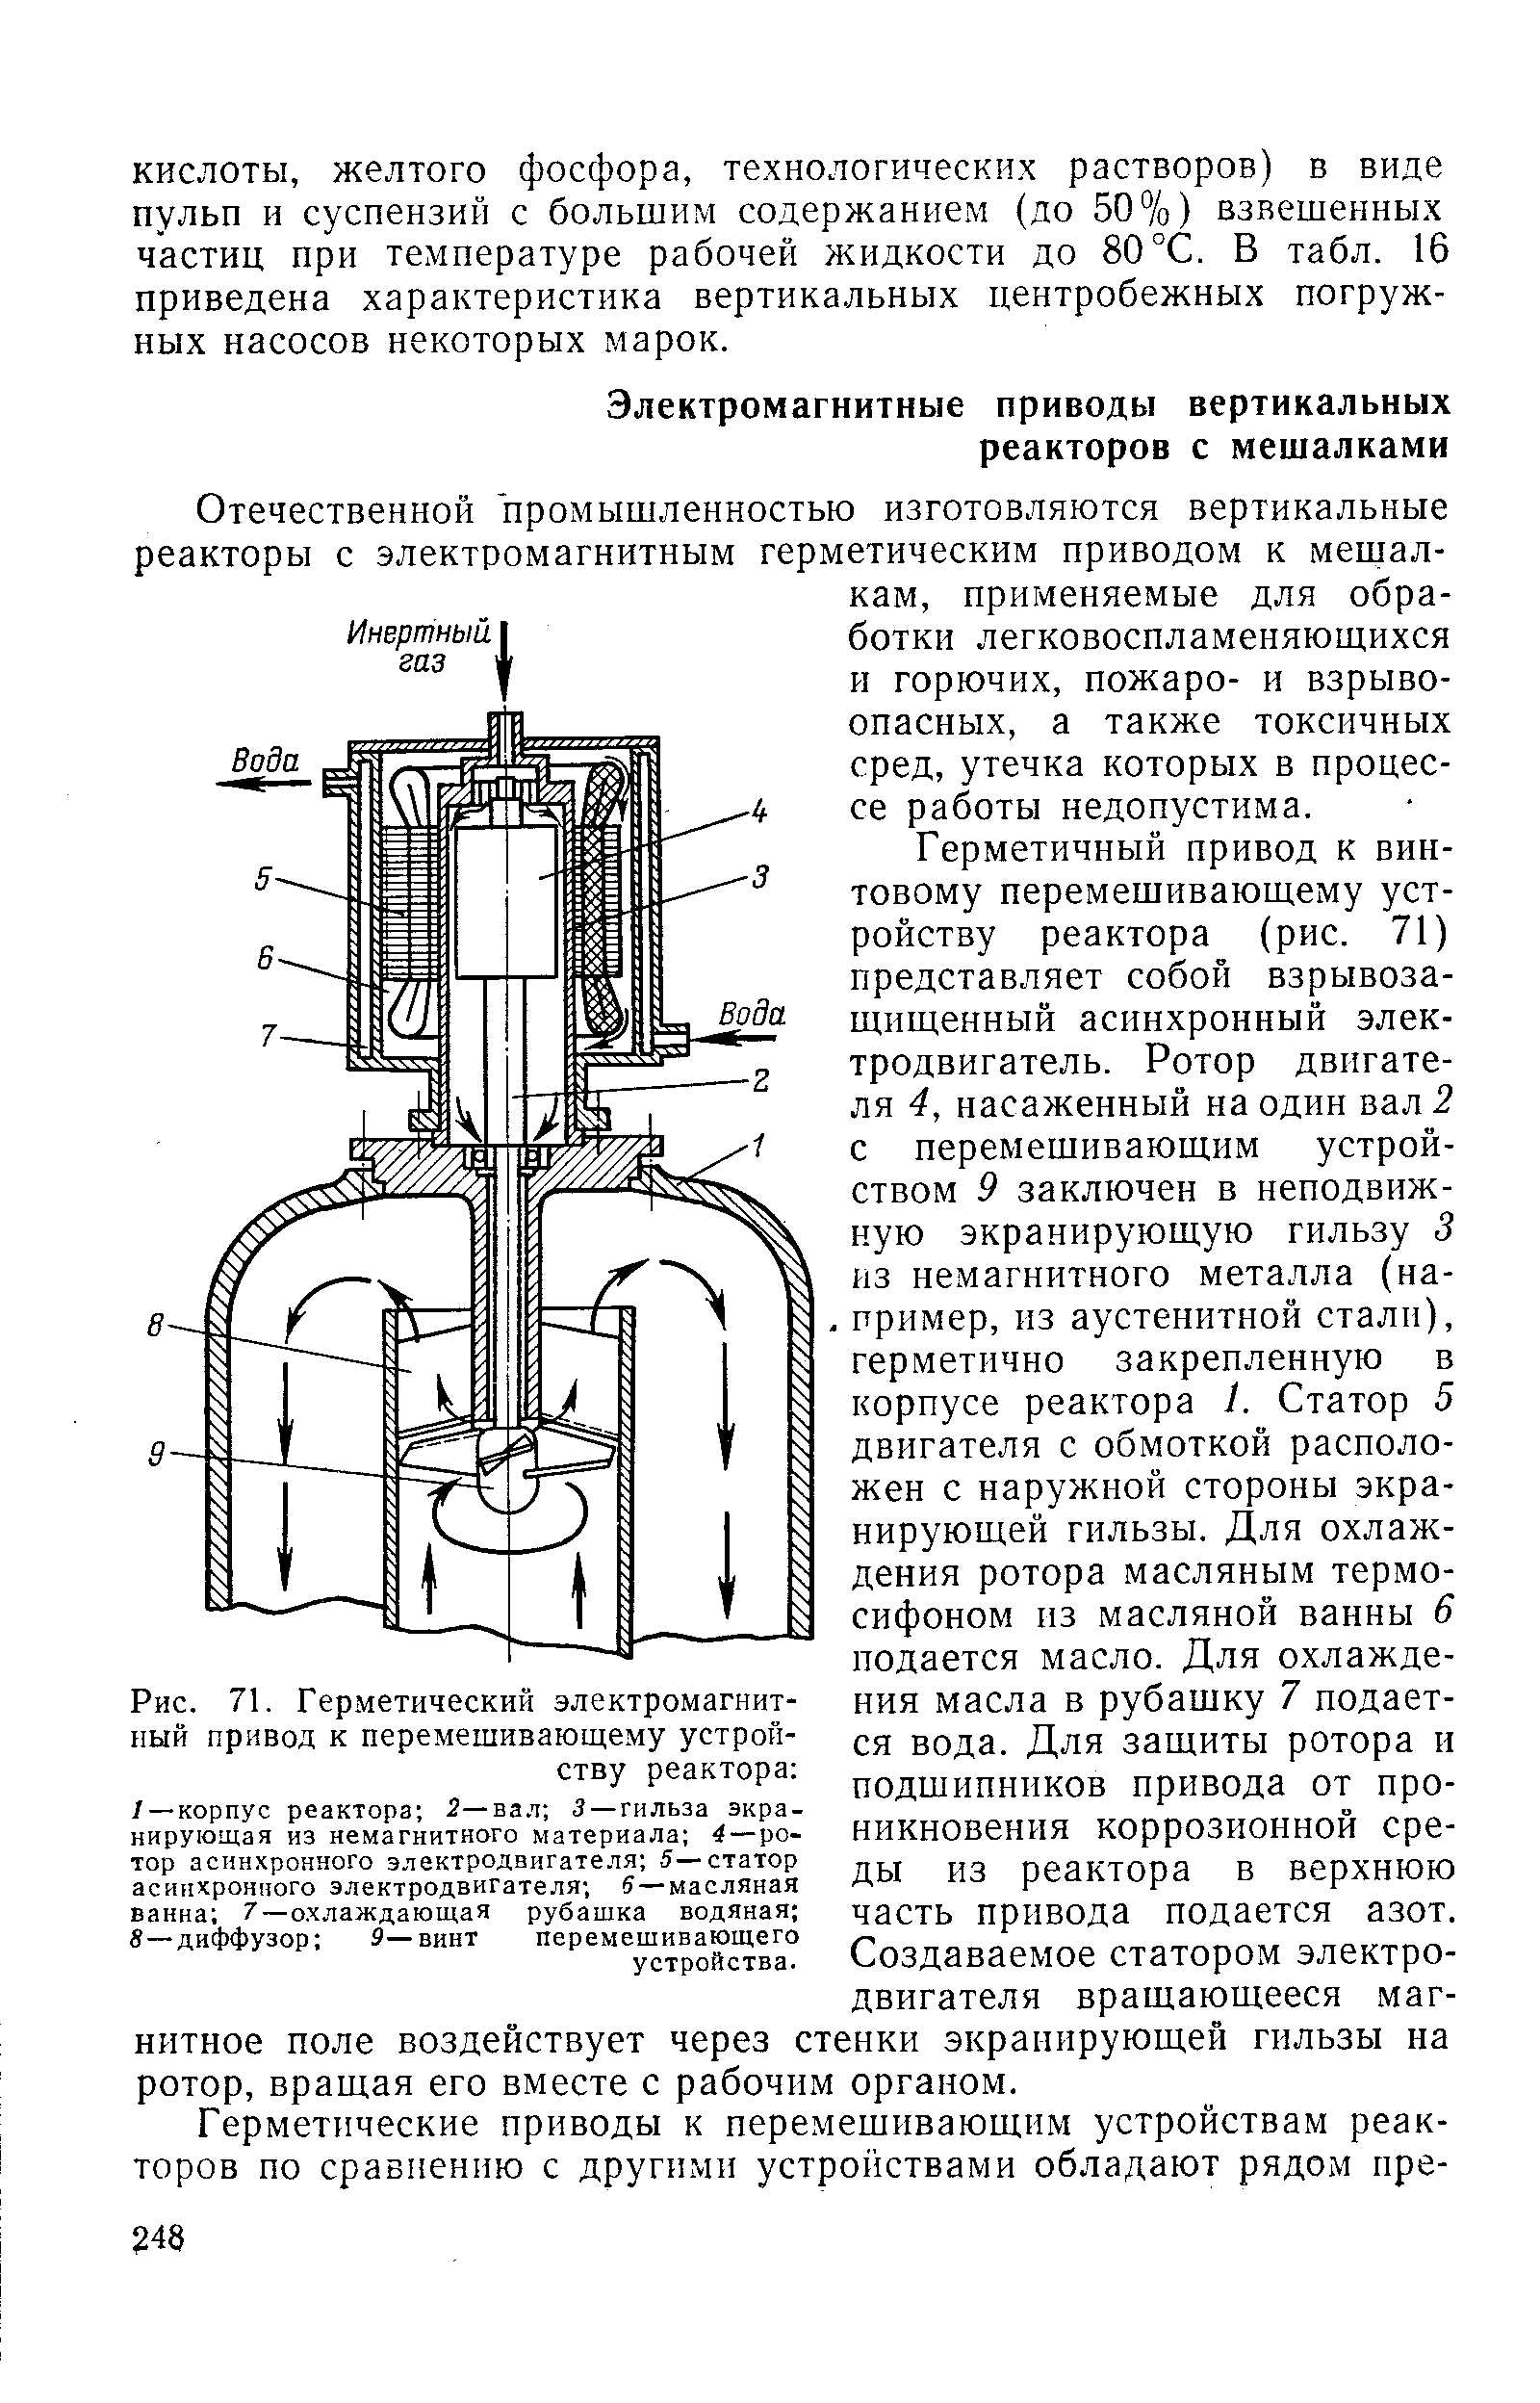 Герметичный привод к винтовому перемешивающему устройству реактора (рис. 71) представляет собой взрывозащищенный асинхронный электродвигатель. Ротор двигателя 4, насаженный на один вал 2 с перемешивающим устройством 9 заключен в неподвижную экранирующую гильзу 3 из немагнитного металла (на-. пример, из аустенитной стали), герметично закрепленную в корпусе реактора 1. Статор 5 двигателя с обмоткой расположен с наружной стороны экранирующей гильзы. Для охлаждения ротора масляным термосифоном пз масляной ванны 6 подается масло. Для охлаждения масла в рубашку 7 подается вода. Для защиты ротора и подшипников привода от проникновения коррозионной среды из реактора в верхнюю часть привода подается азот. Создаваемое статором электродвигателя вращающееся магнитное поле воздействует через стенки экранирующей гильзы на ротор, вращая его вместе с рабочим органом.